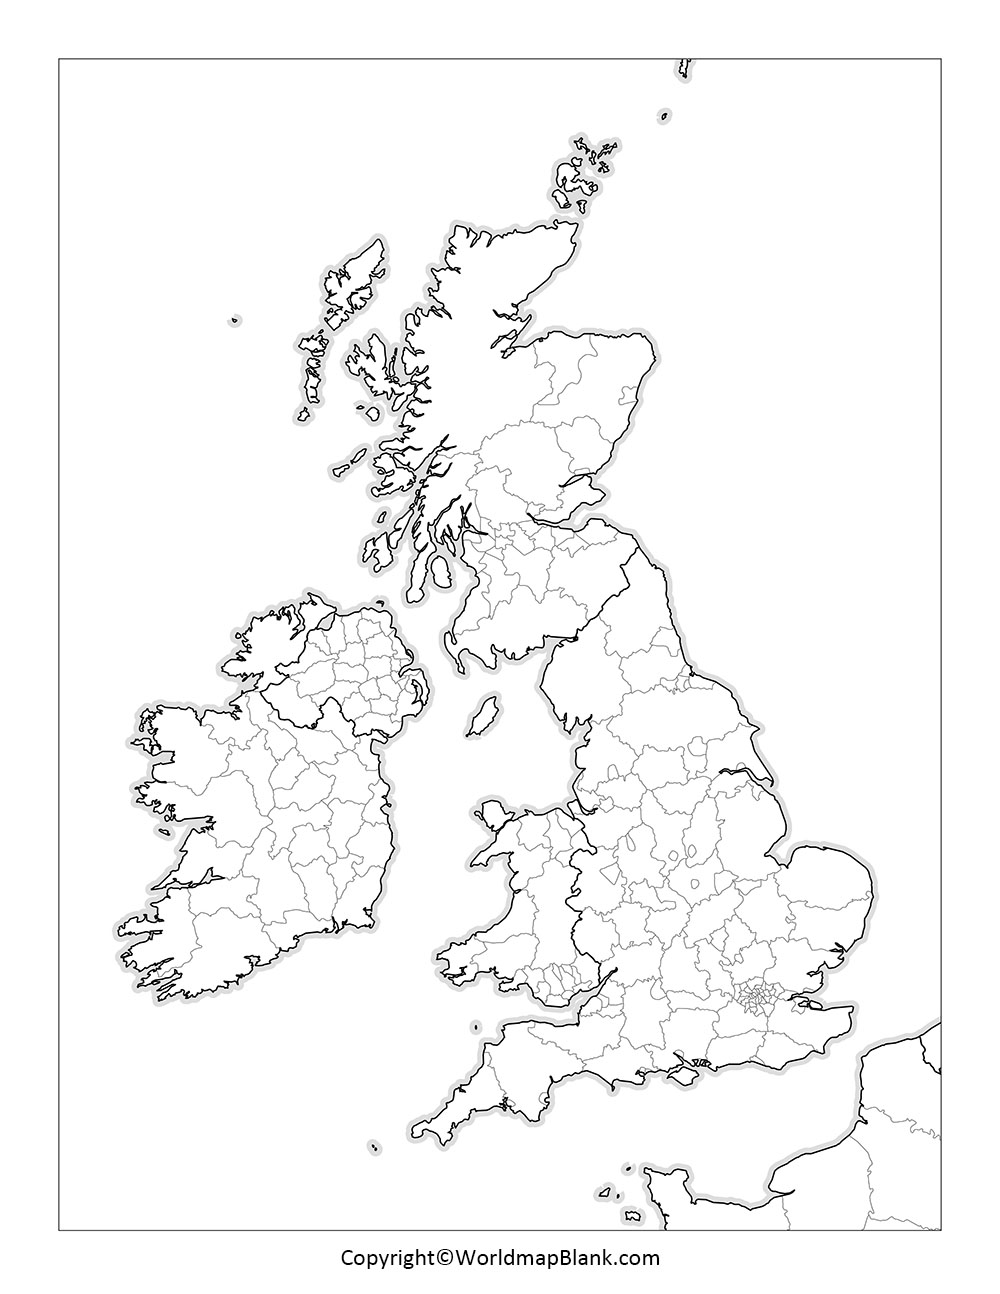 Великобритания на контурной карте. Контурная карта Великобритании. Великобритания политическая карта контурная. Политическая карта Великобритании контурная карта. Границы Великобритании на контурной карте.